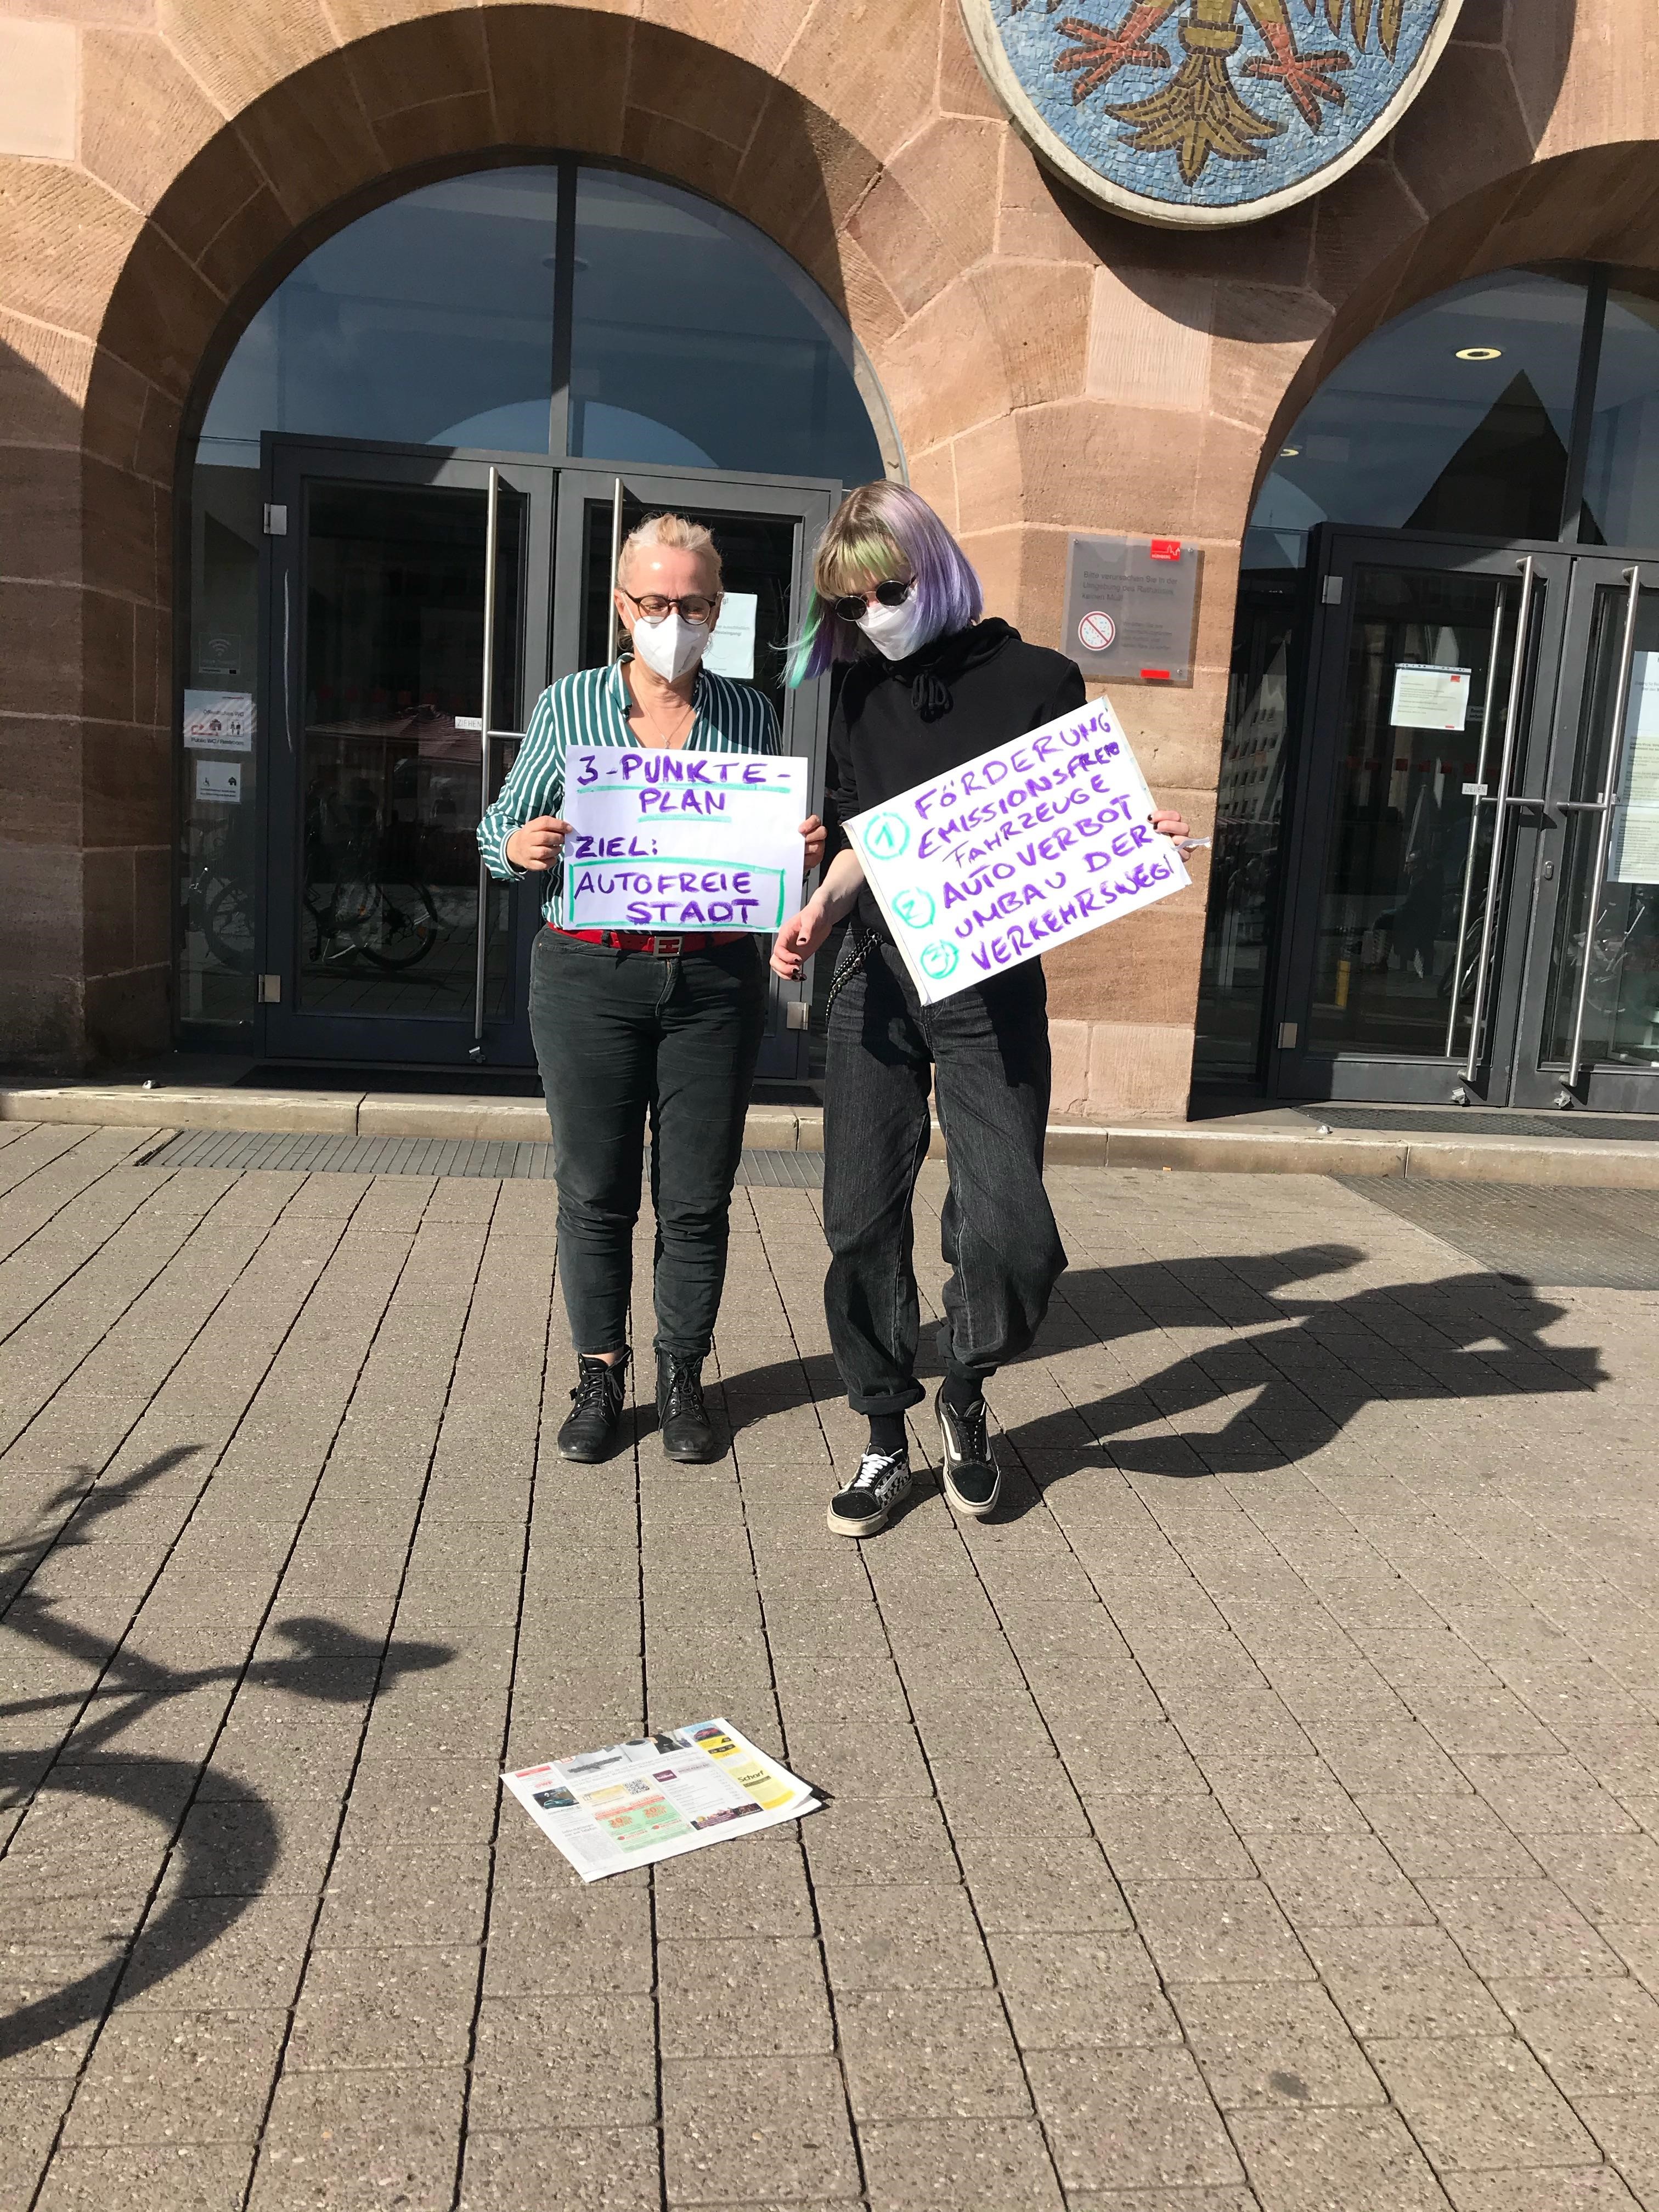 Zwei Personen mit Maske vor Rathaus mit Plakat